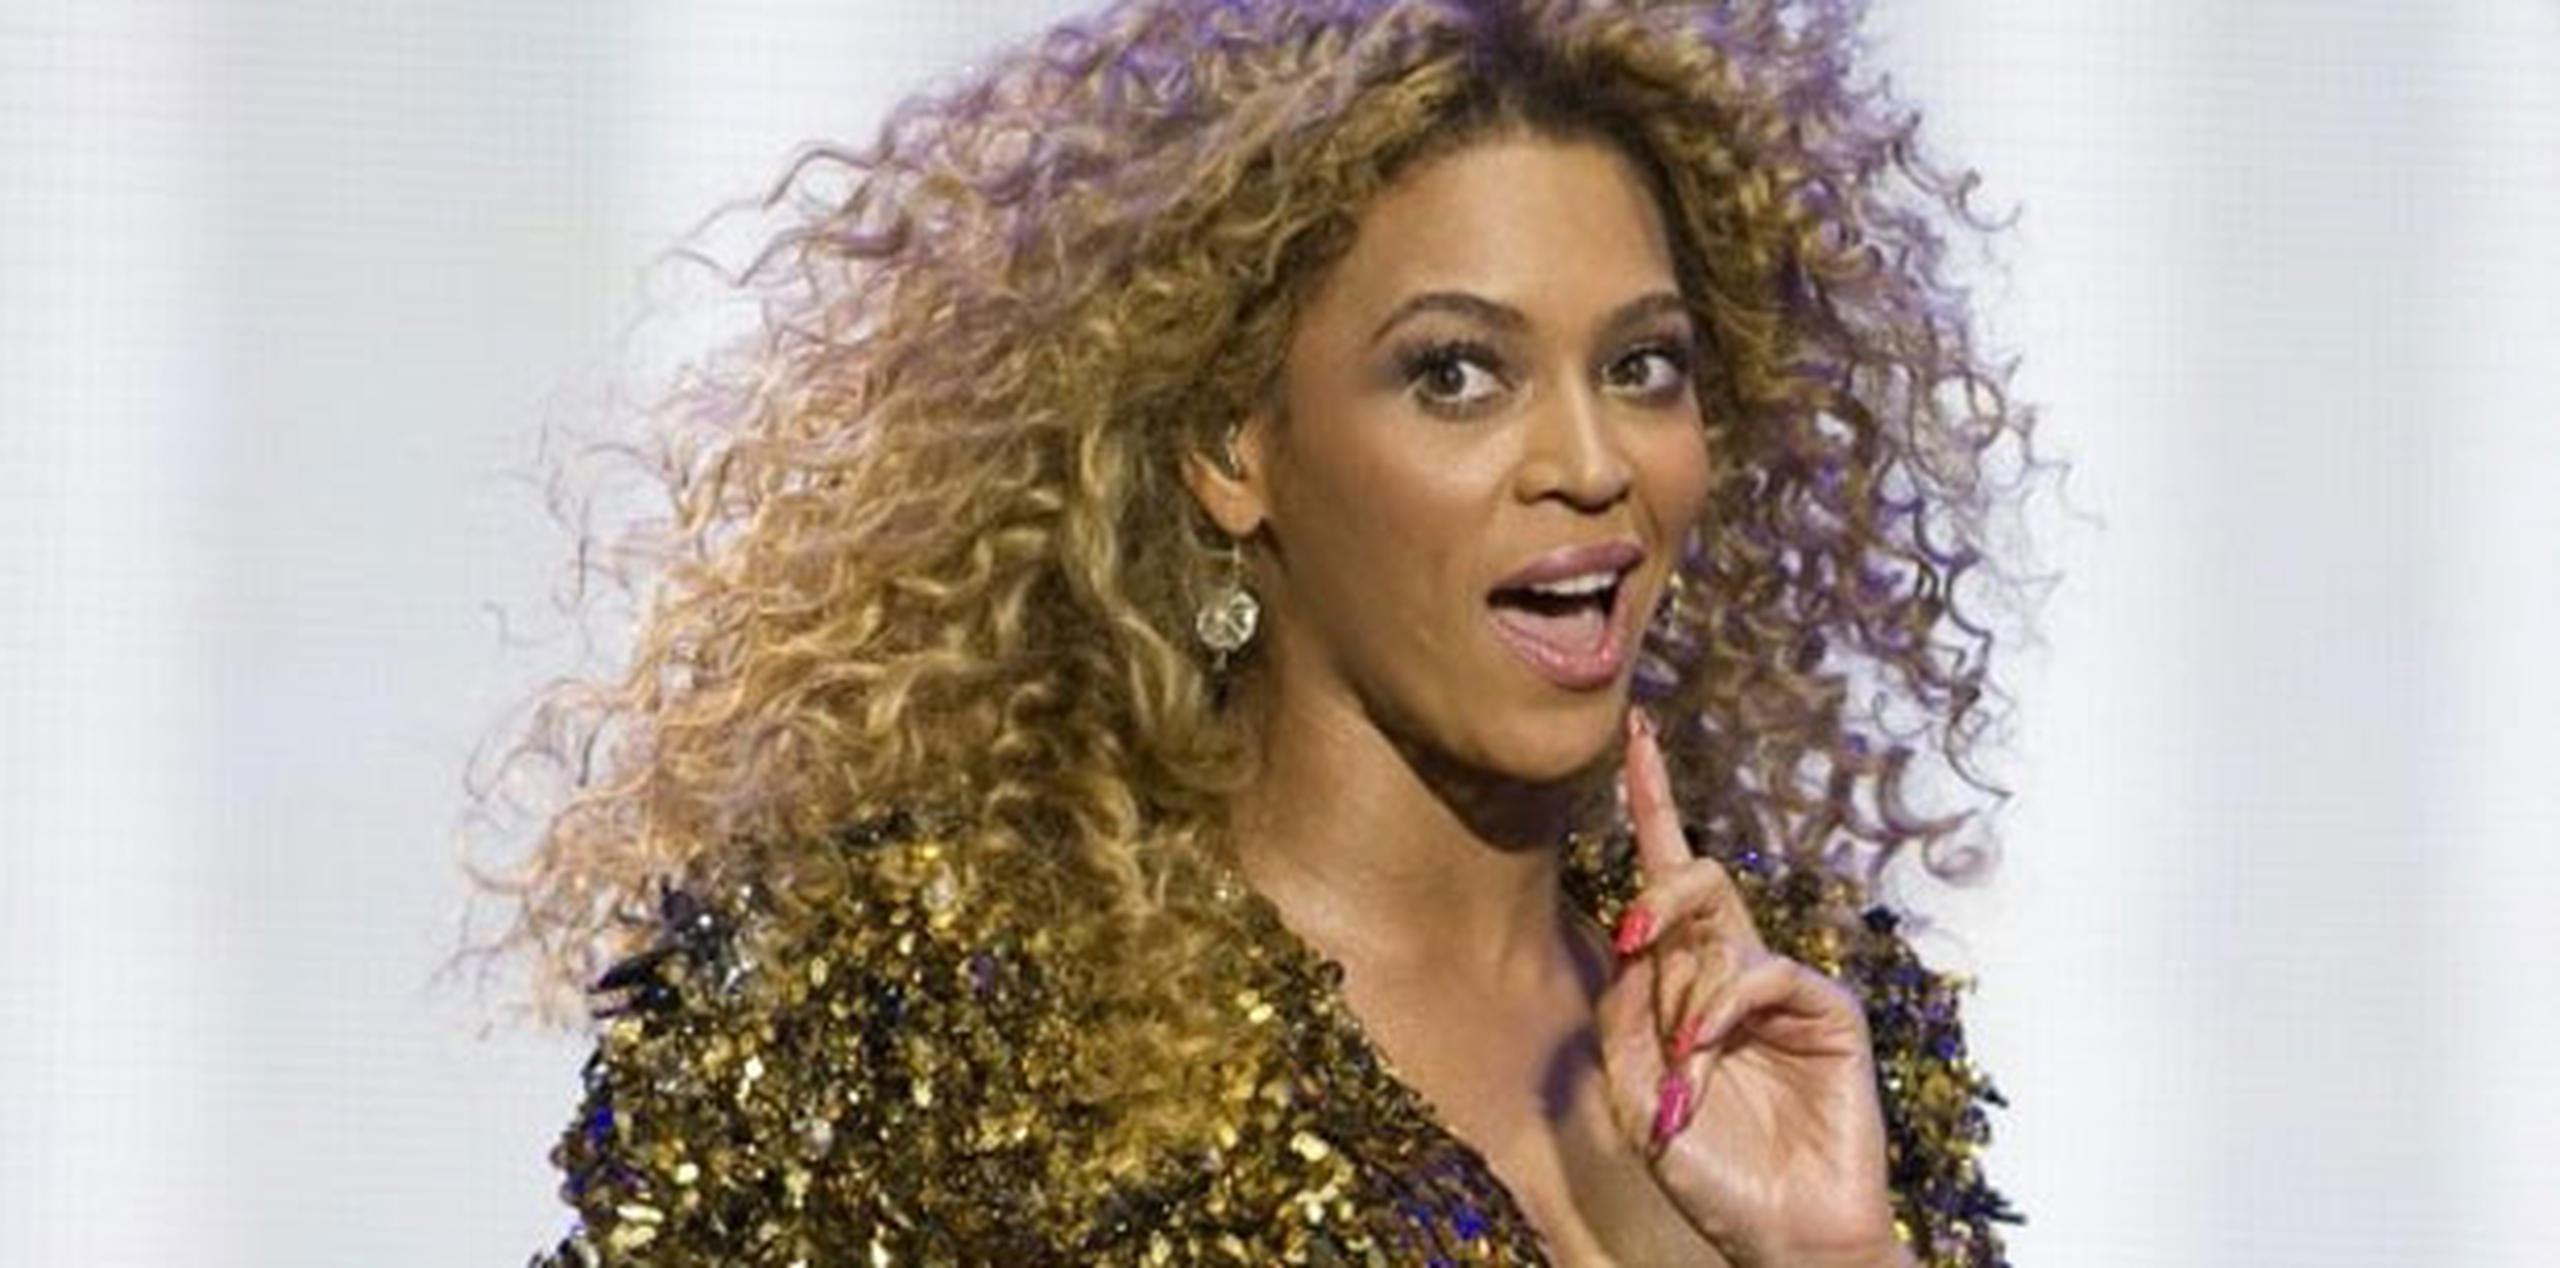 Beyoncé no ha confirmado ni negado el rumor, reacción que no es nueva ante lo celosa de mantener la mayor privacidad en su vida privada.